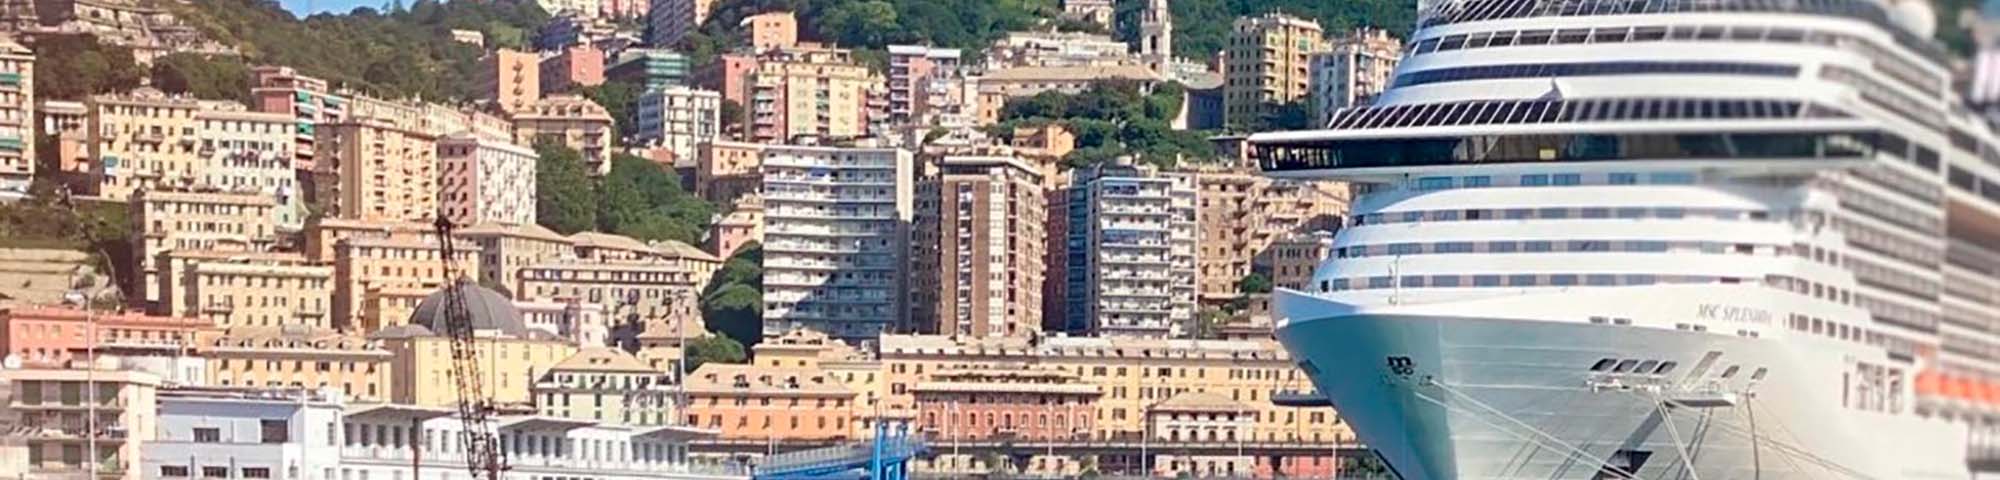 Image ressource du port de destination Gênes pour l'itinéraire du ferry Porto Torres - Gênes